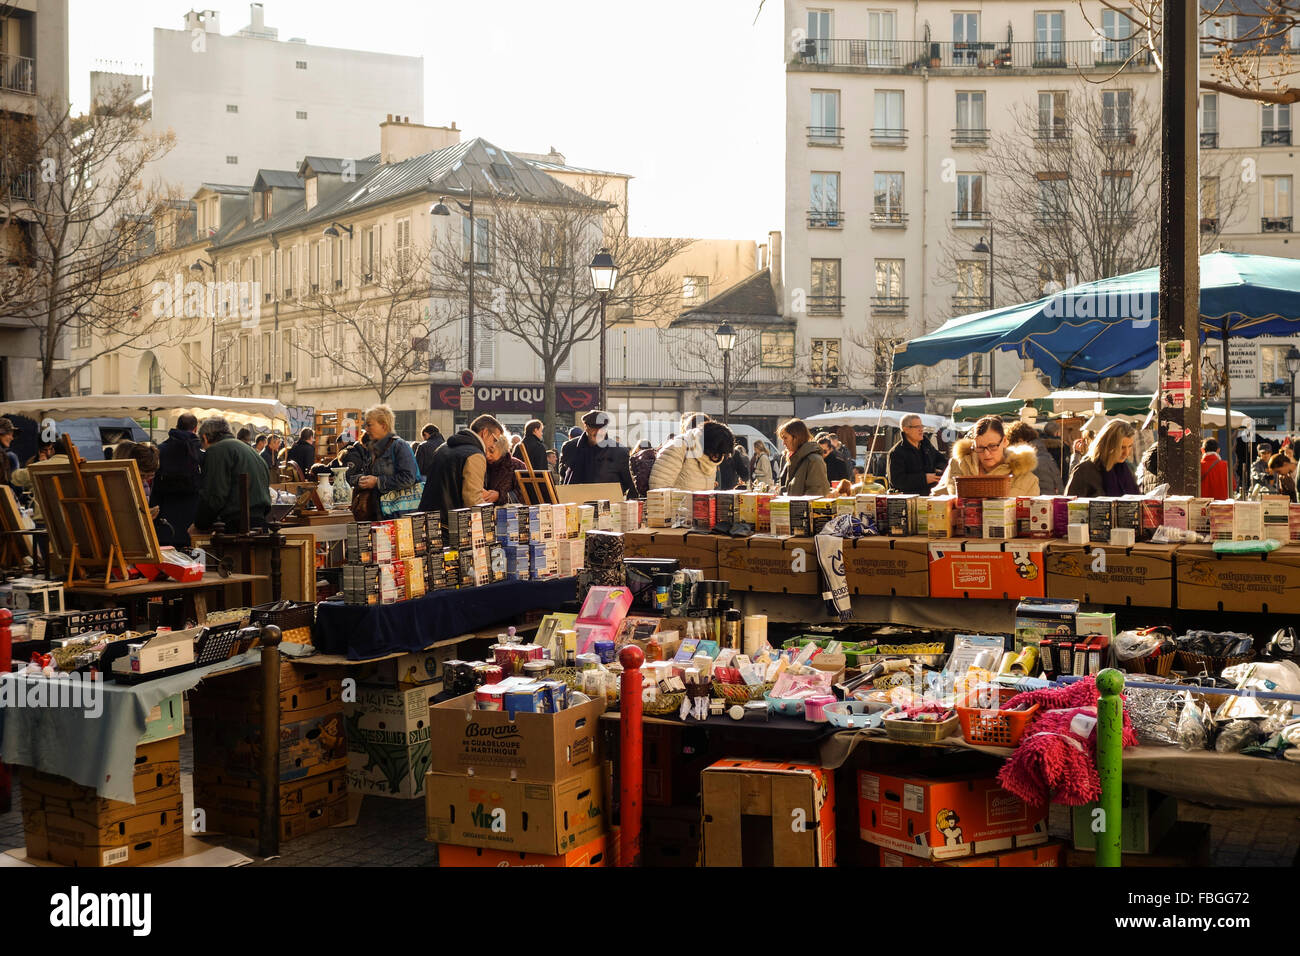 Flohmarkt am Ort d'aligre, einen lebhaften Markt auf dem Platz Aligre. Paris, Frankreich. Stockfoto